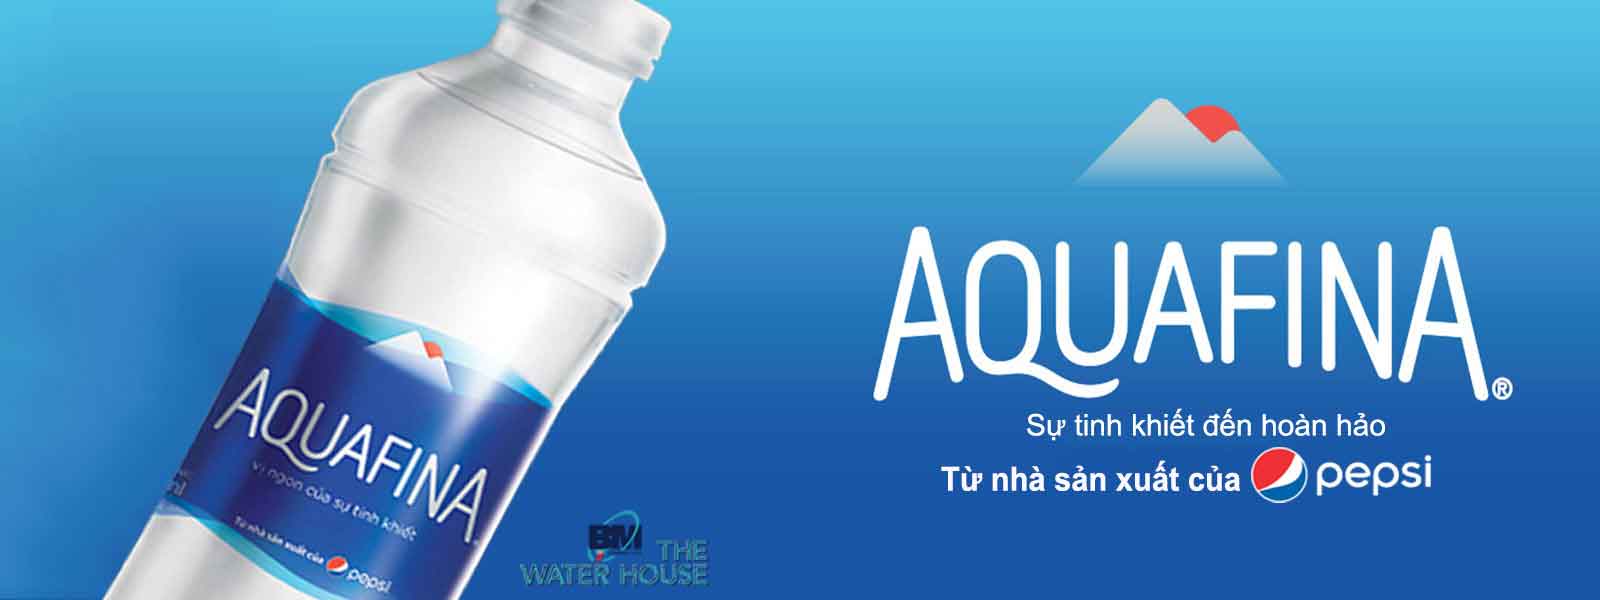 Giao nước uống tận nhà đem đến thương hiệu Aquafina